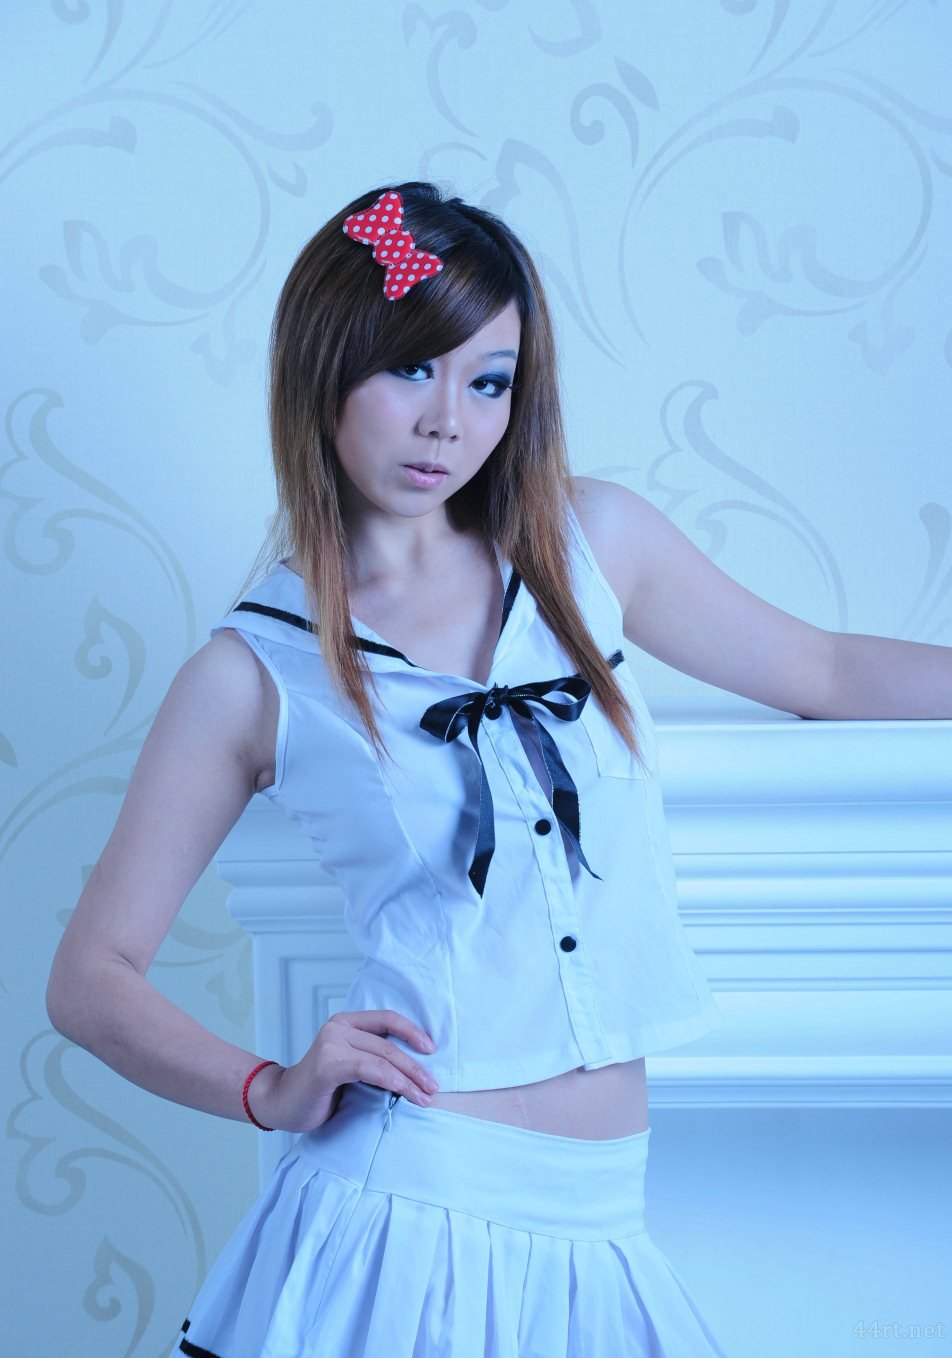 Тайваньская модель Сугуэр приватно снимает человеческое тело в студенческой одежде